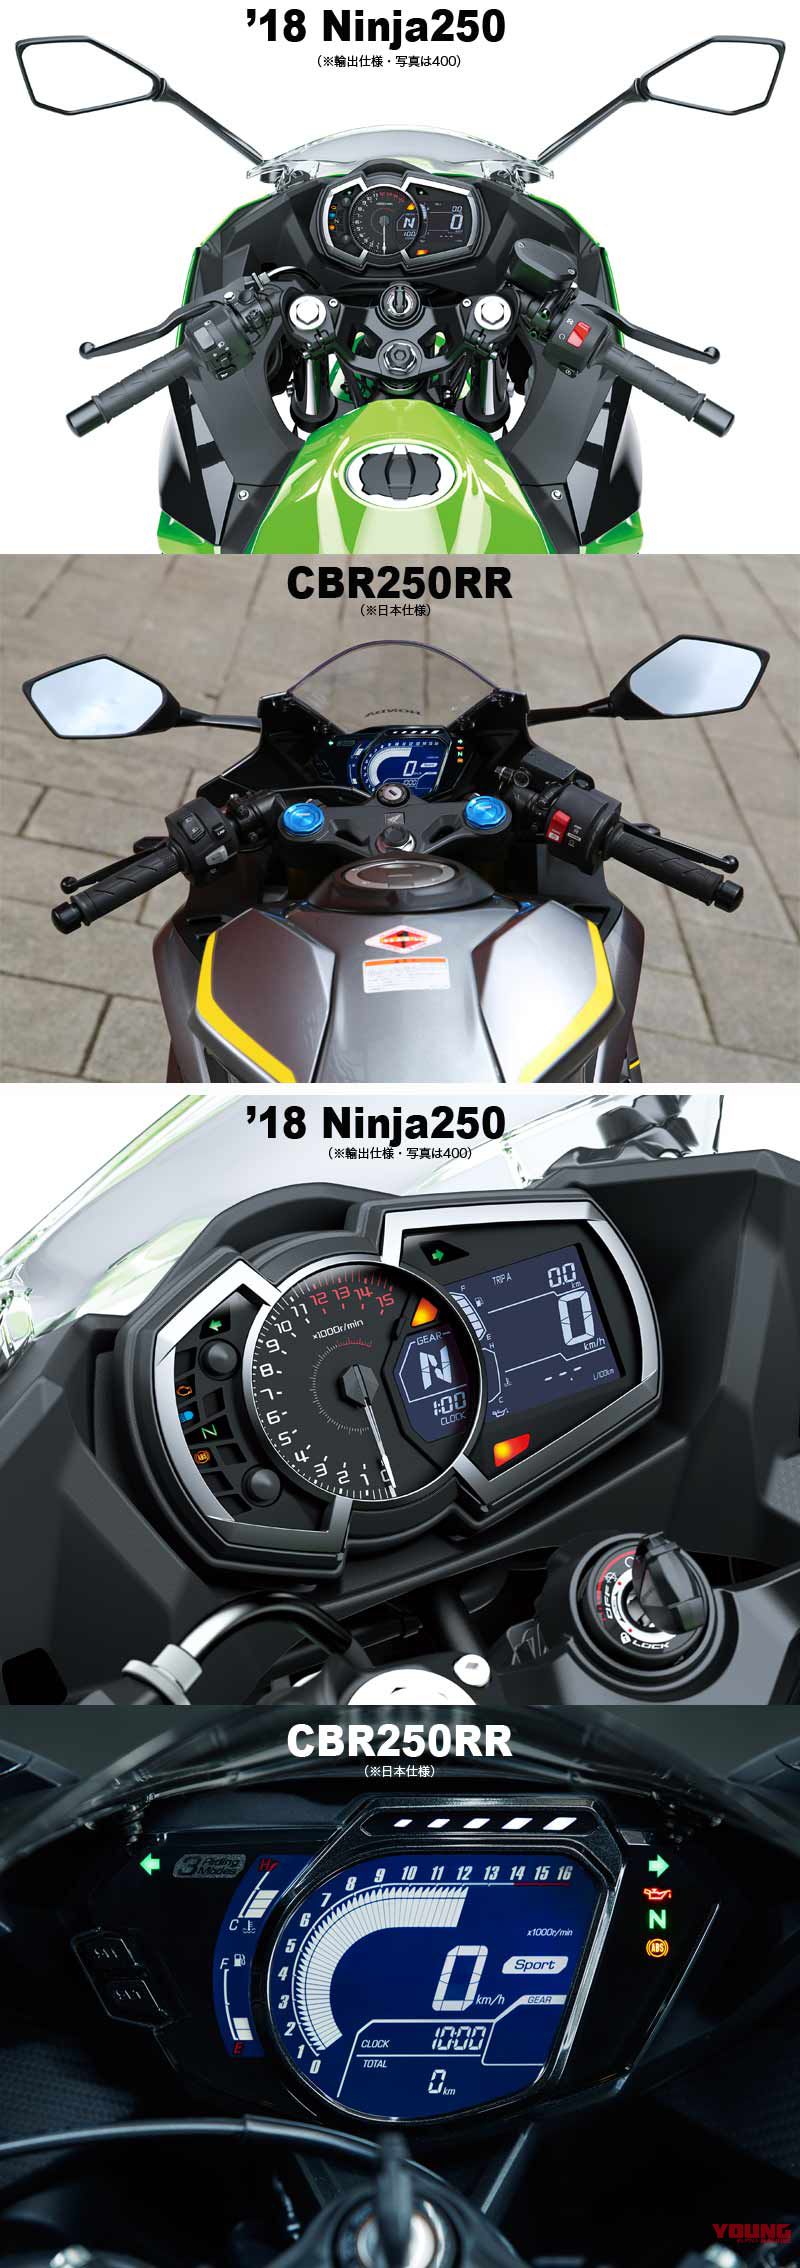 So sánh Ninja 250 và CBR250RR: Kẻ tám lạng, người nửa cân